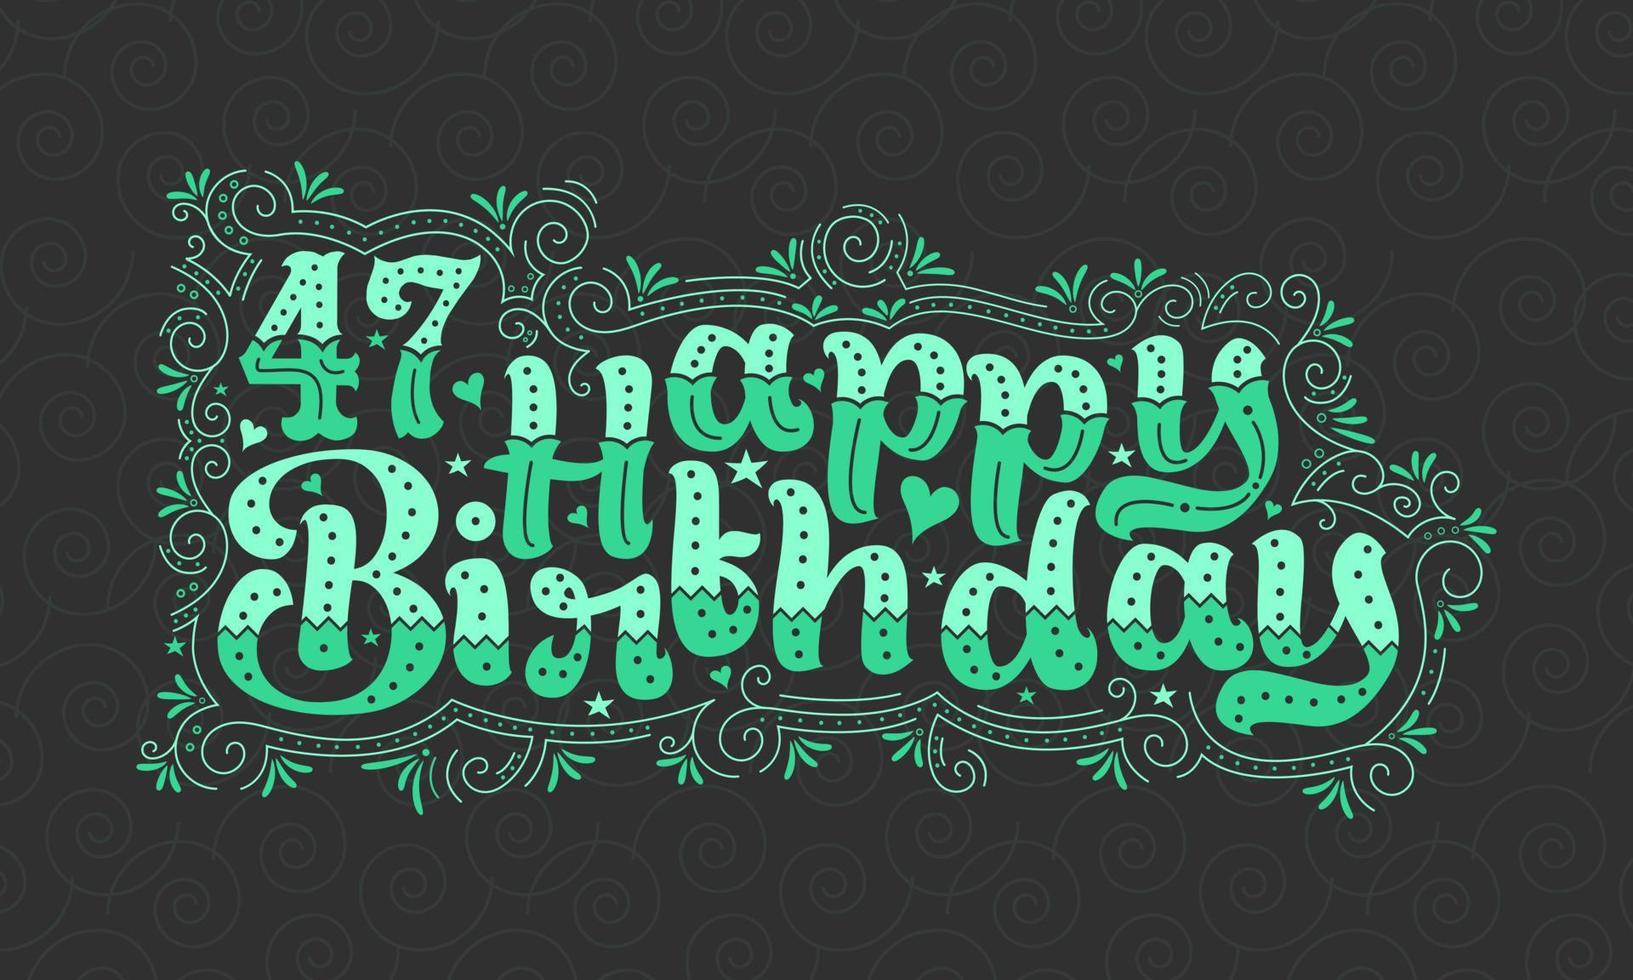 47. Happy Birthday Schriftzug, 47 Jahre Geburtstag schönes Typografie-Design mit grünen Punkten, Linien und Blättern. vektor